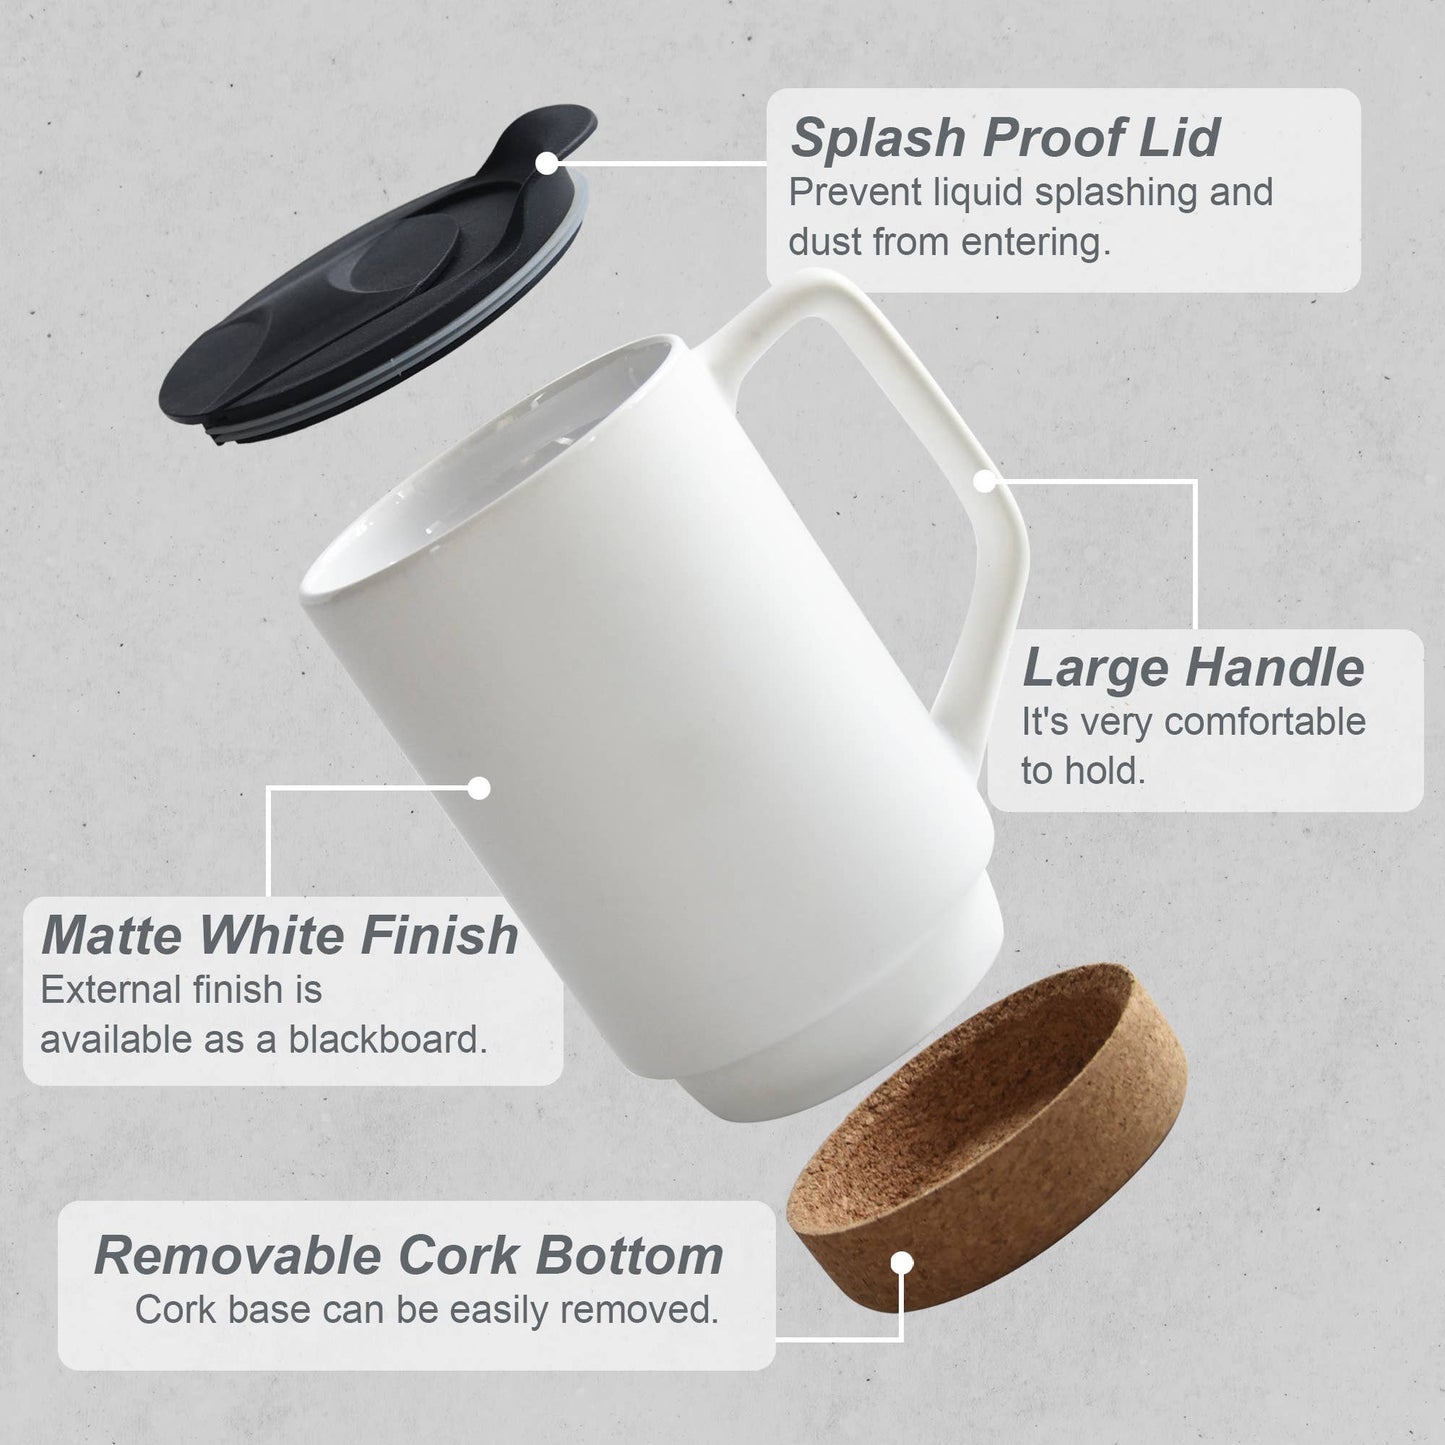 Tea or Coffee Mug with Lid and Removeable Cork Base